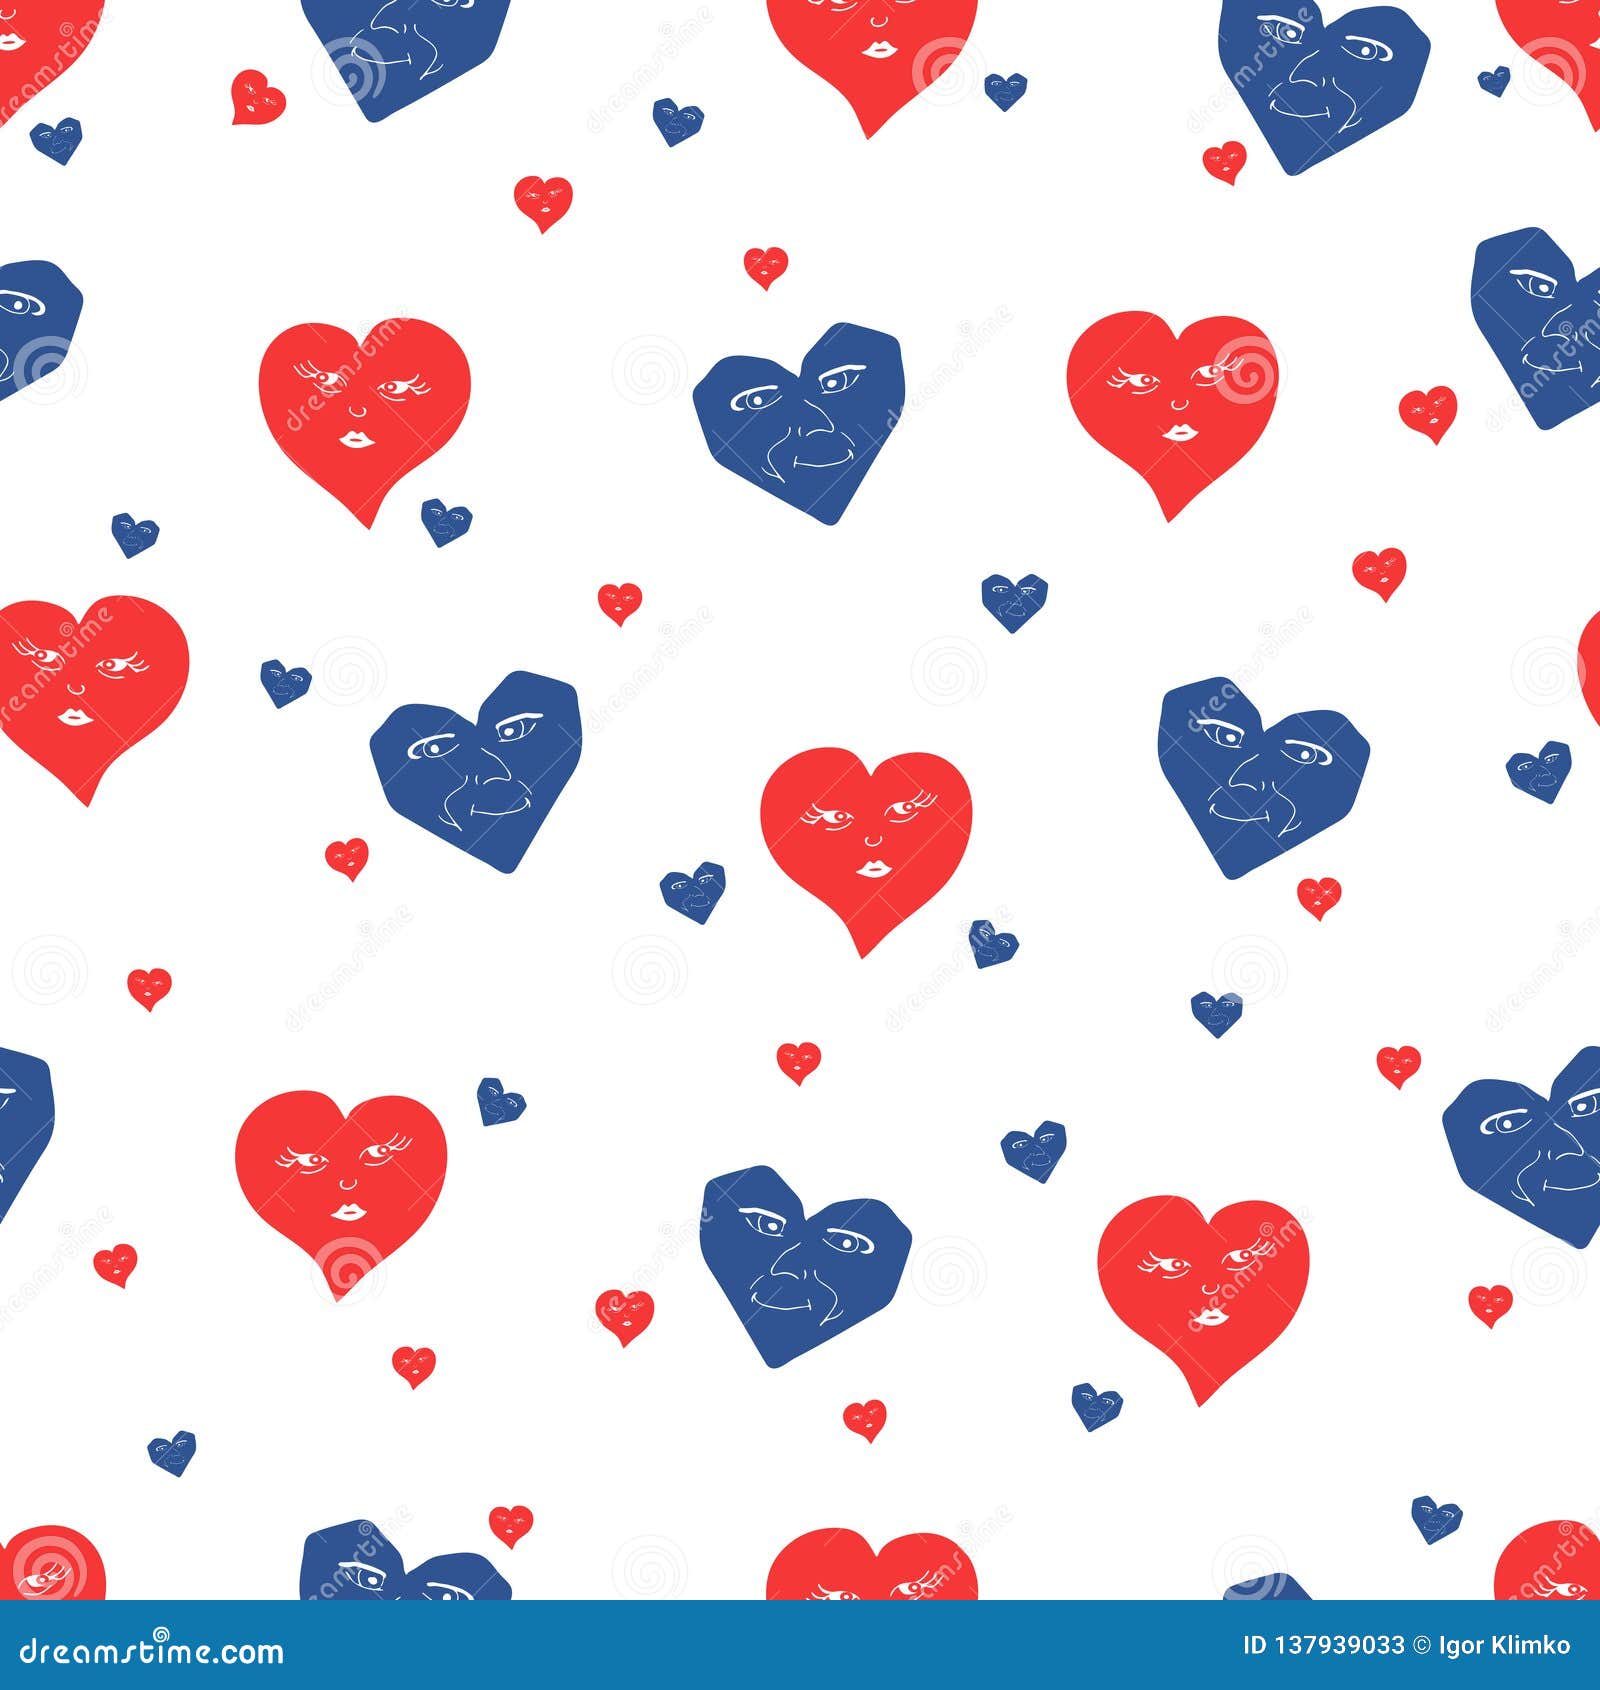 Hãy ngắm nhìn những hình nền đơn giản nhưng lại vô cùng ấn tượng với họa tiết trái tim đỏ và xanh lam nổi bật. Hình ảnh này sẽ mang lại cảm giác tươi vui, lãng mạn cho bất kì ai khi nhìn vào. Cùng admiring một tác phẩm vector seamless pattern of red and blue hearts stock vector để ăn chơi đi nào.